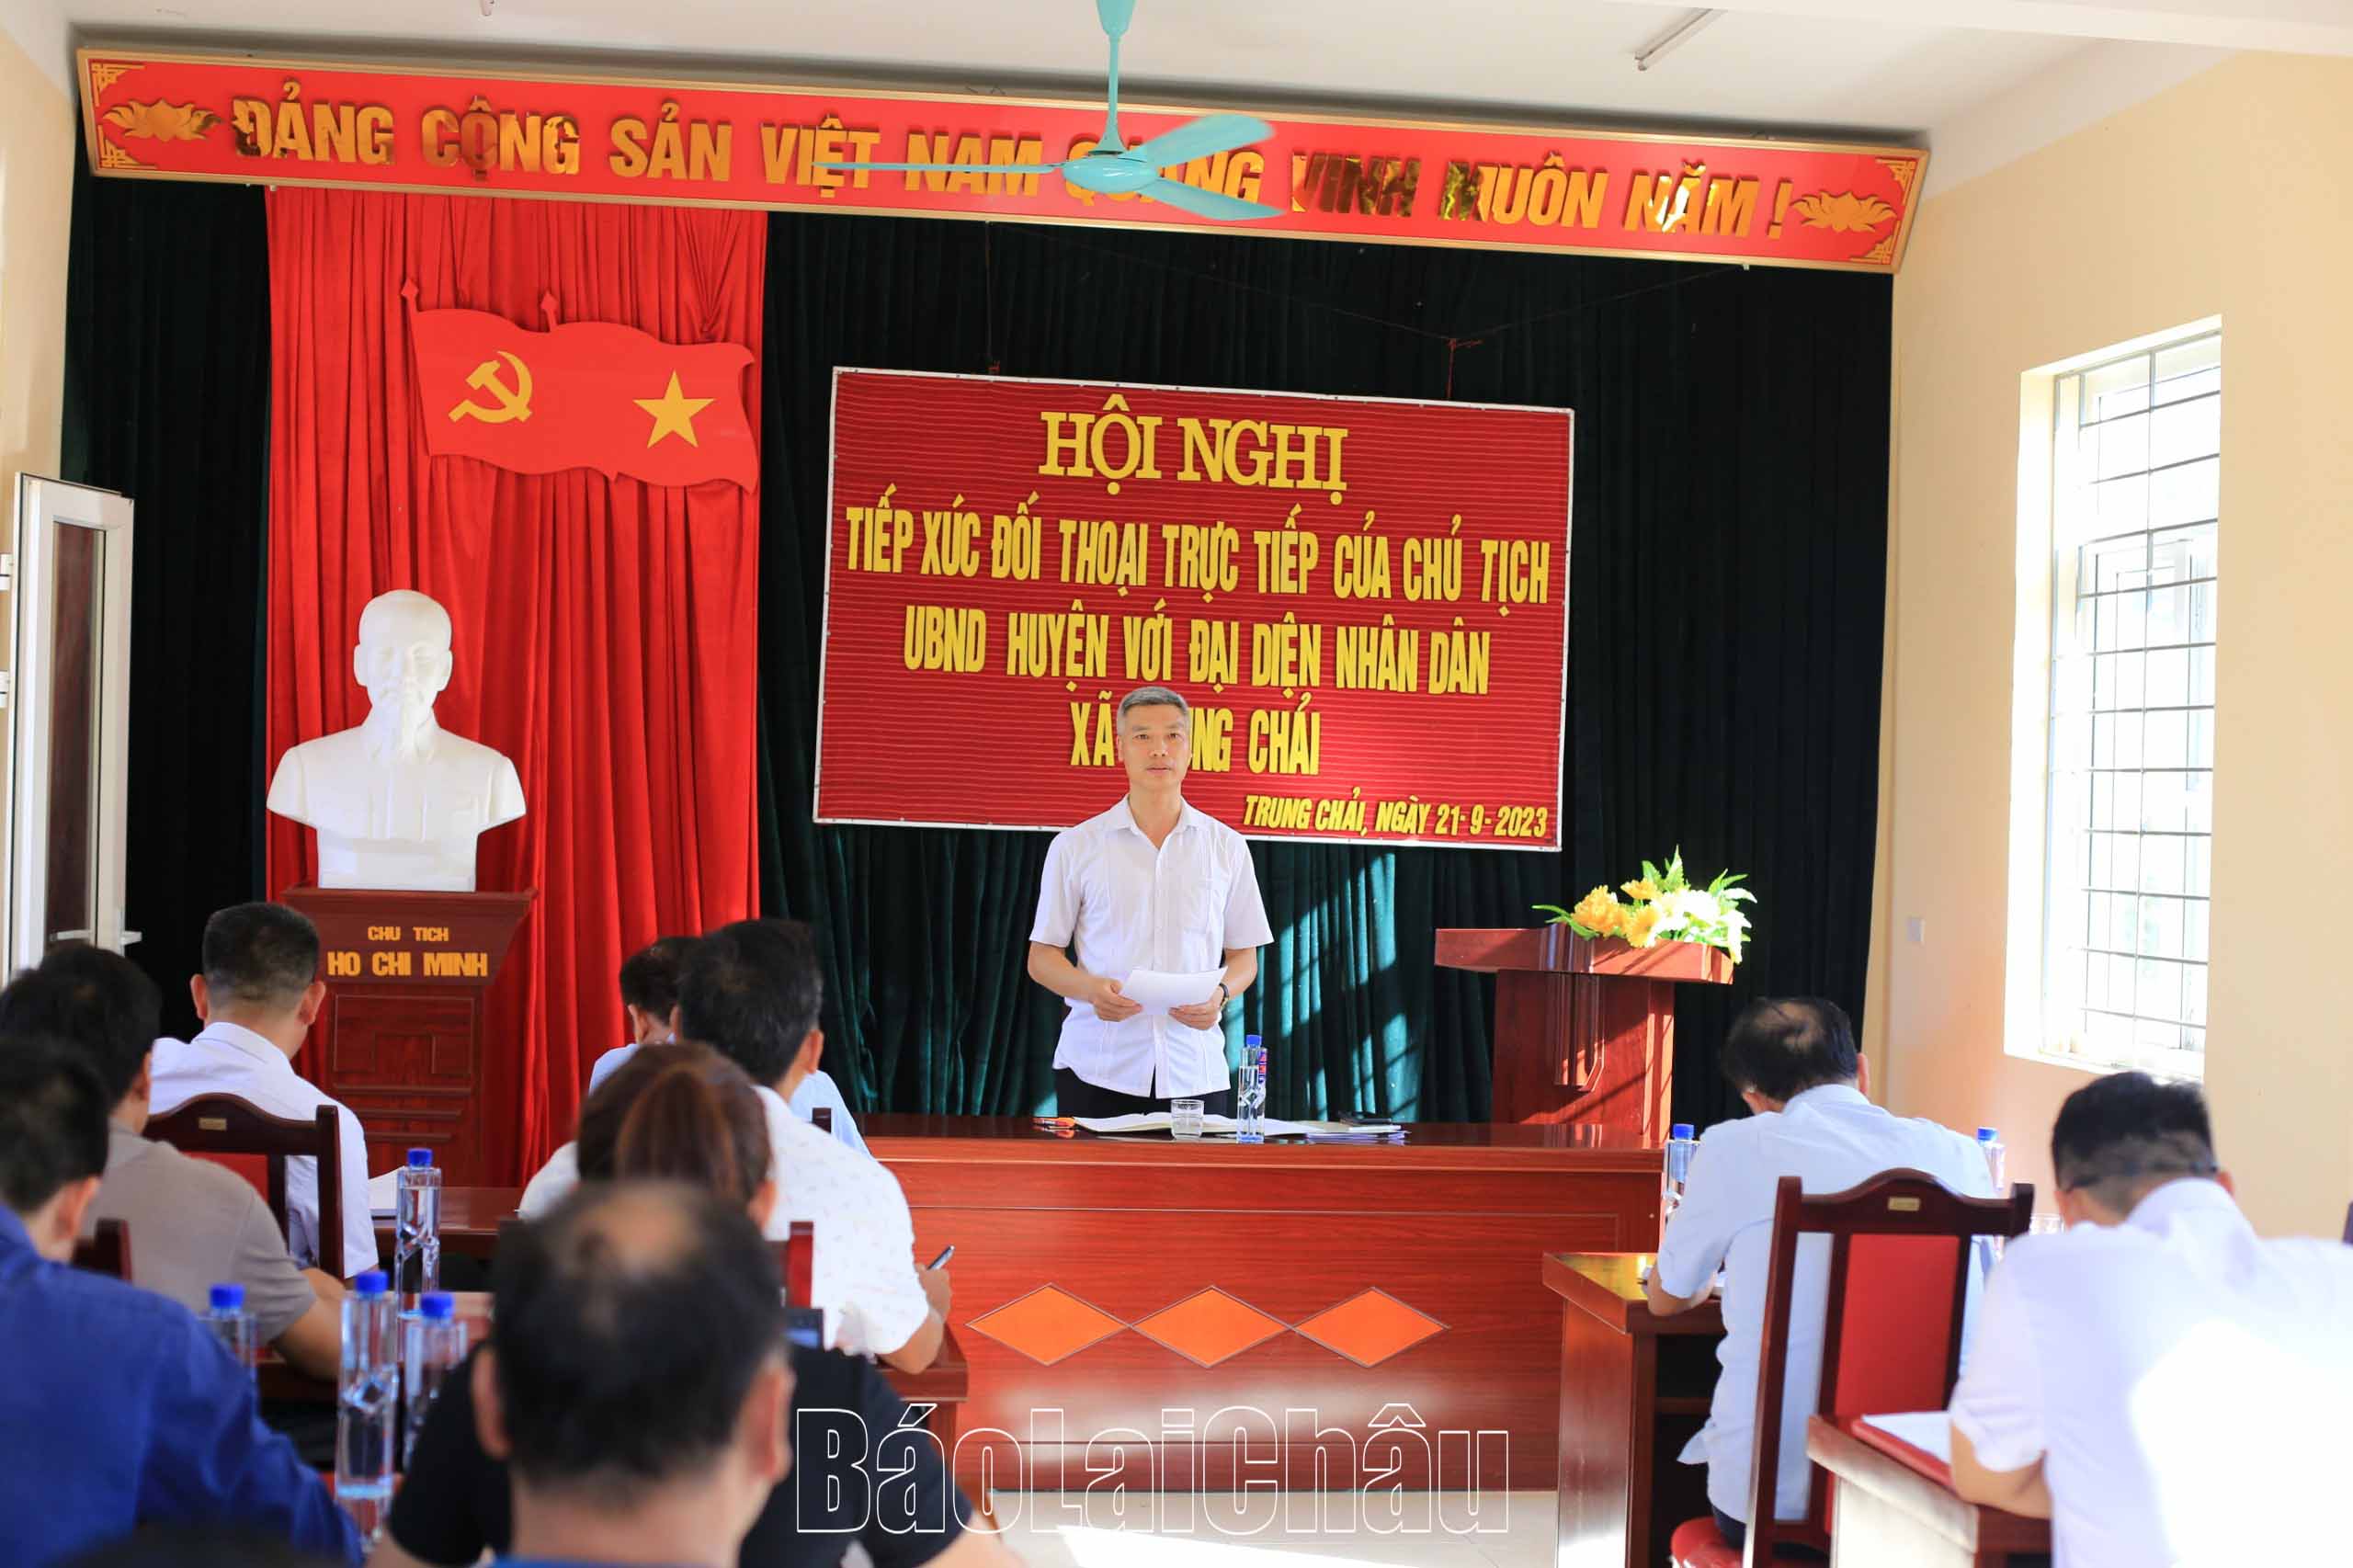 Đông chí Hà Văn Sơn đối thoại với người dân xã Trung Chải.